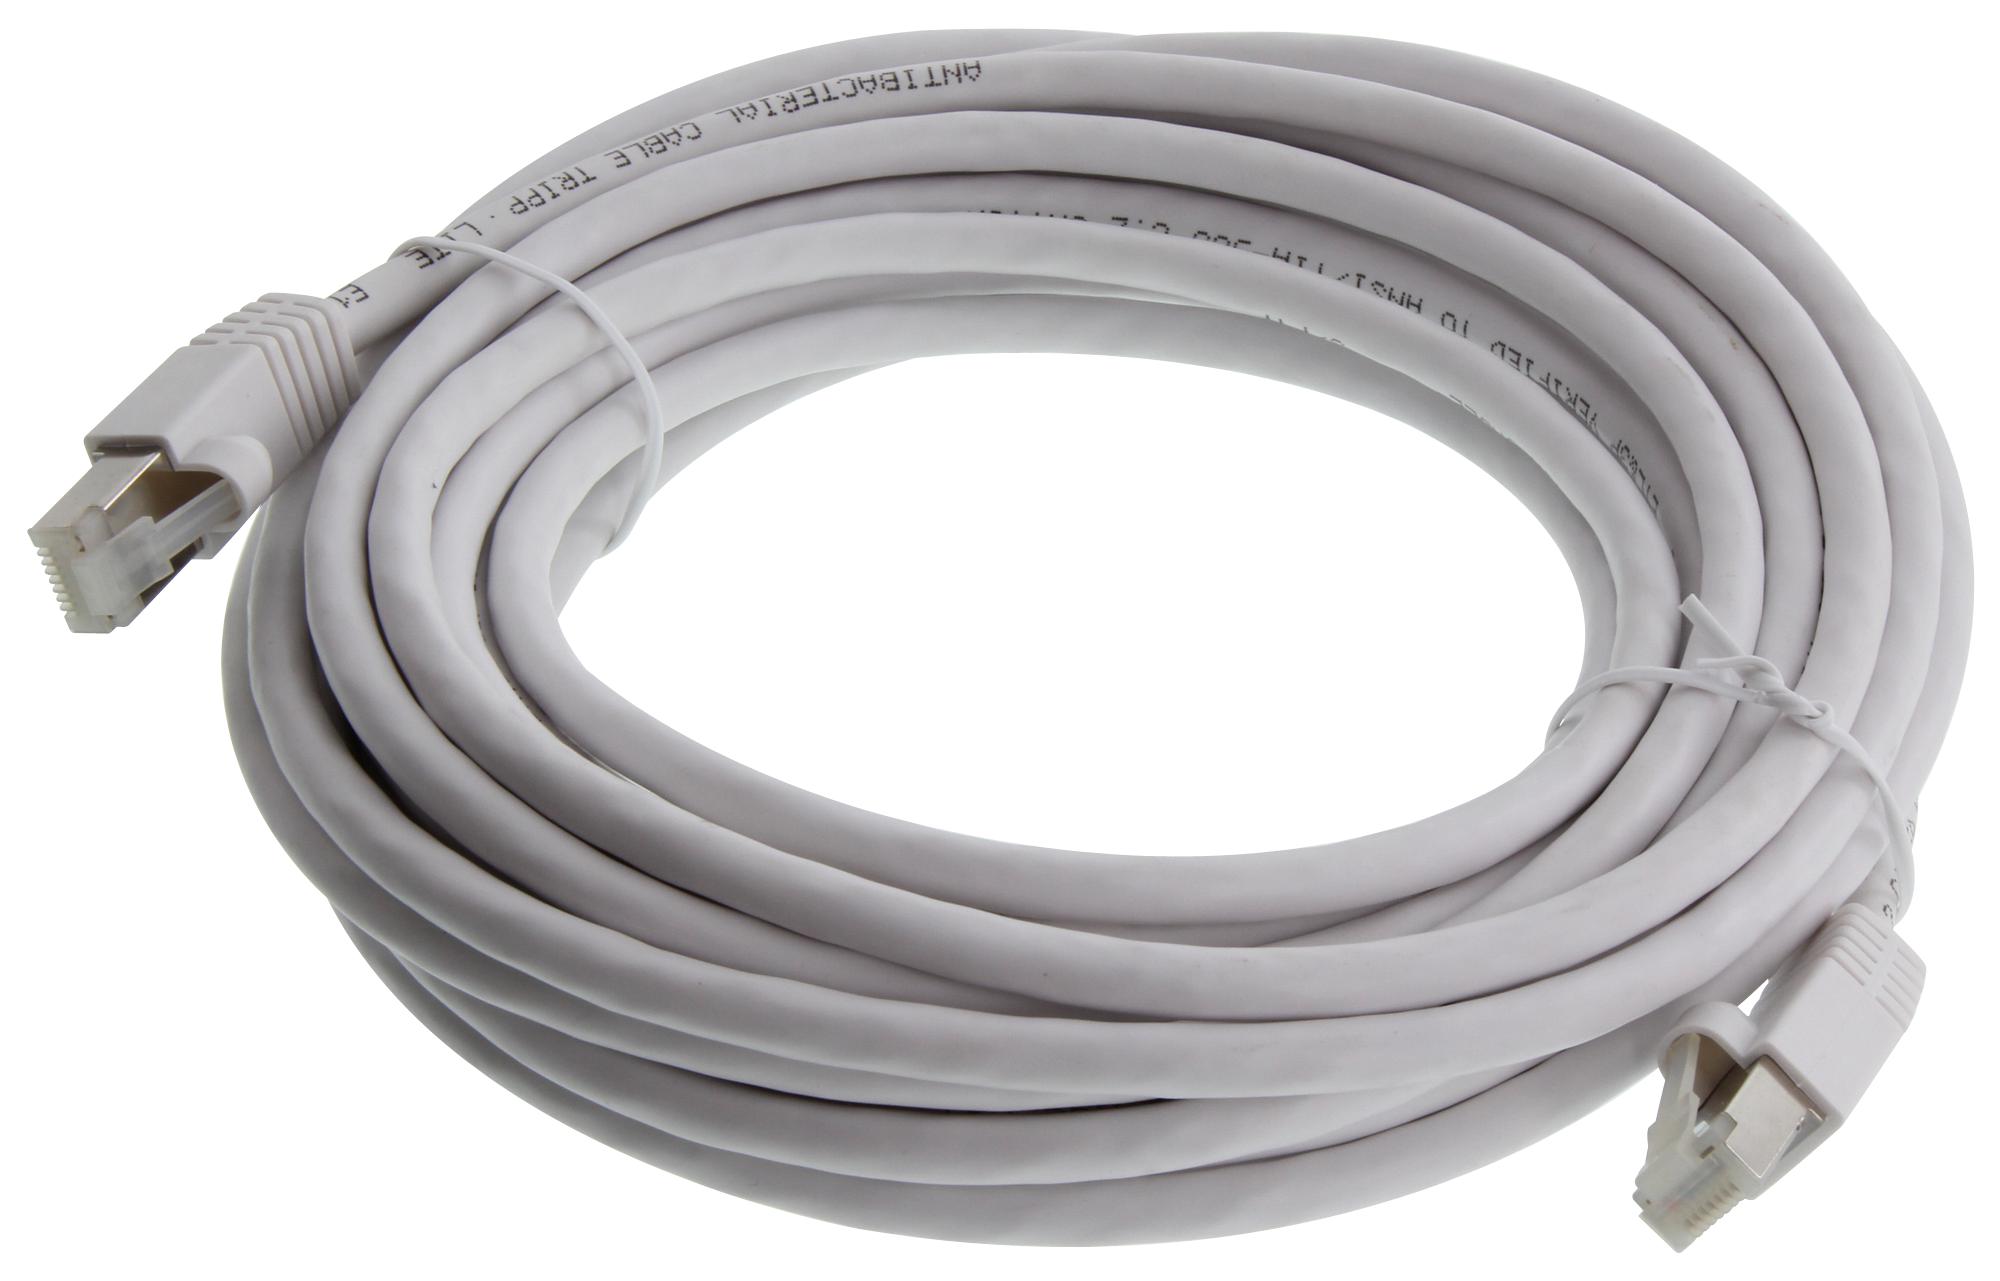 Eaton Tripp Lite N262Ab-025-Wh Enet Cable, Rj45 Plug-Plug, 25Ft, White